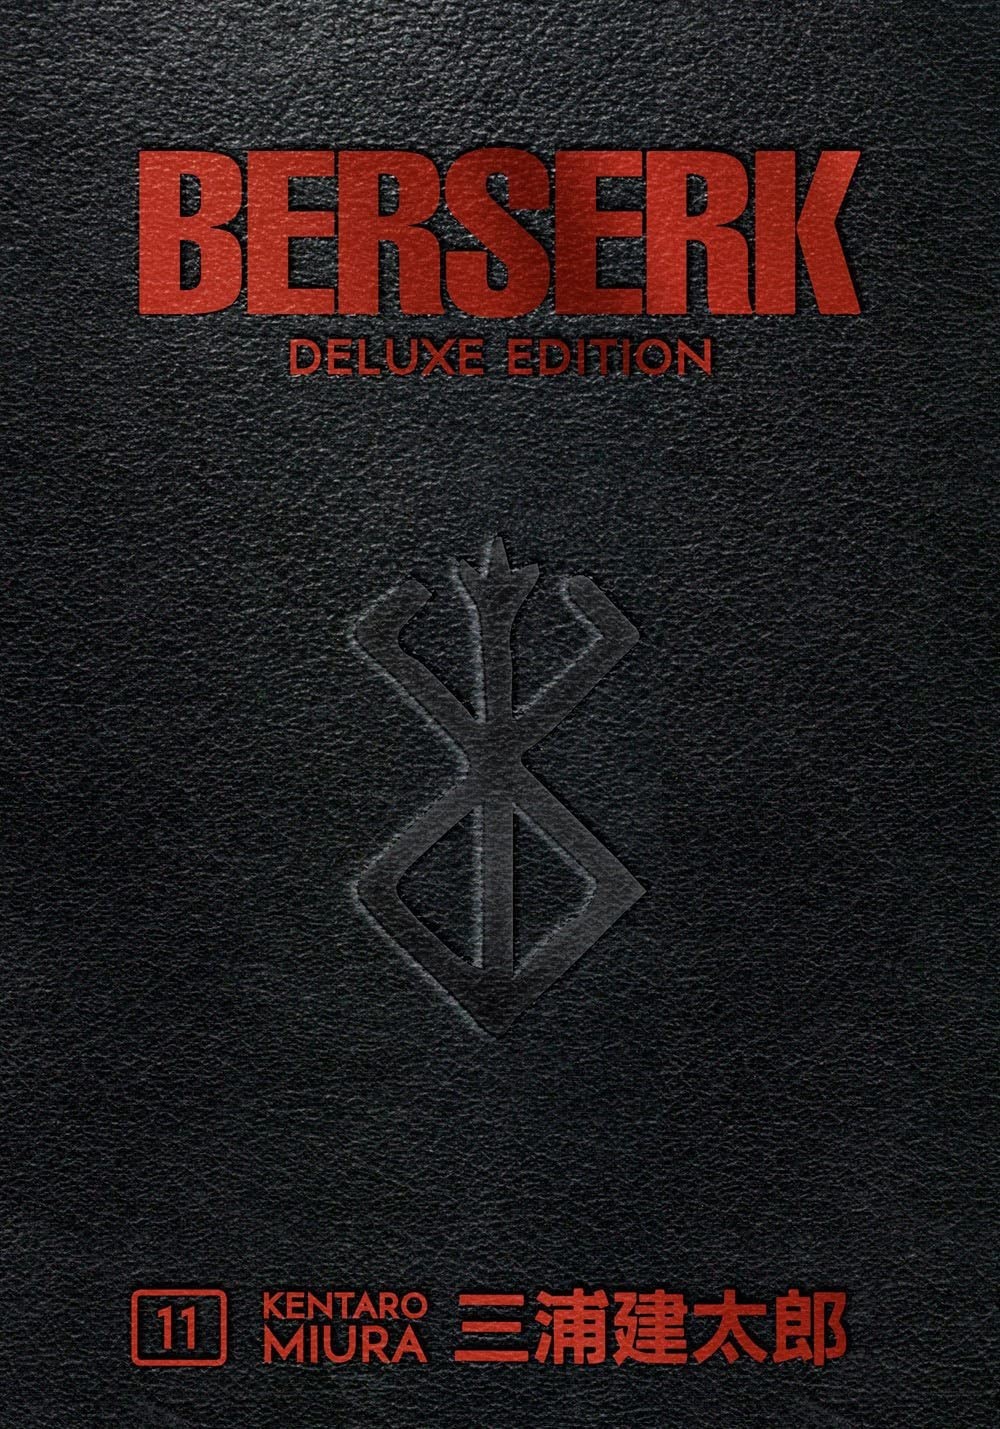 Berserk Deluxe, Vol. 11